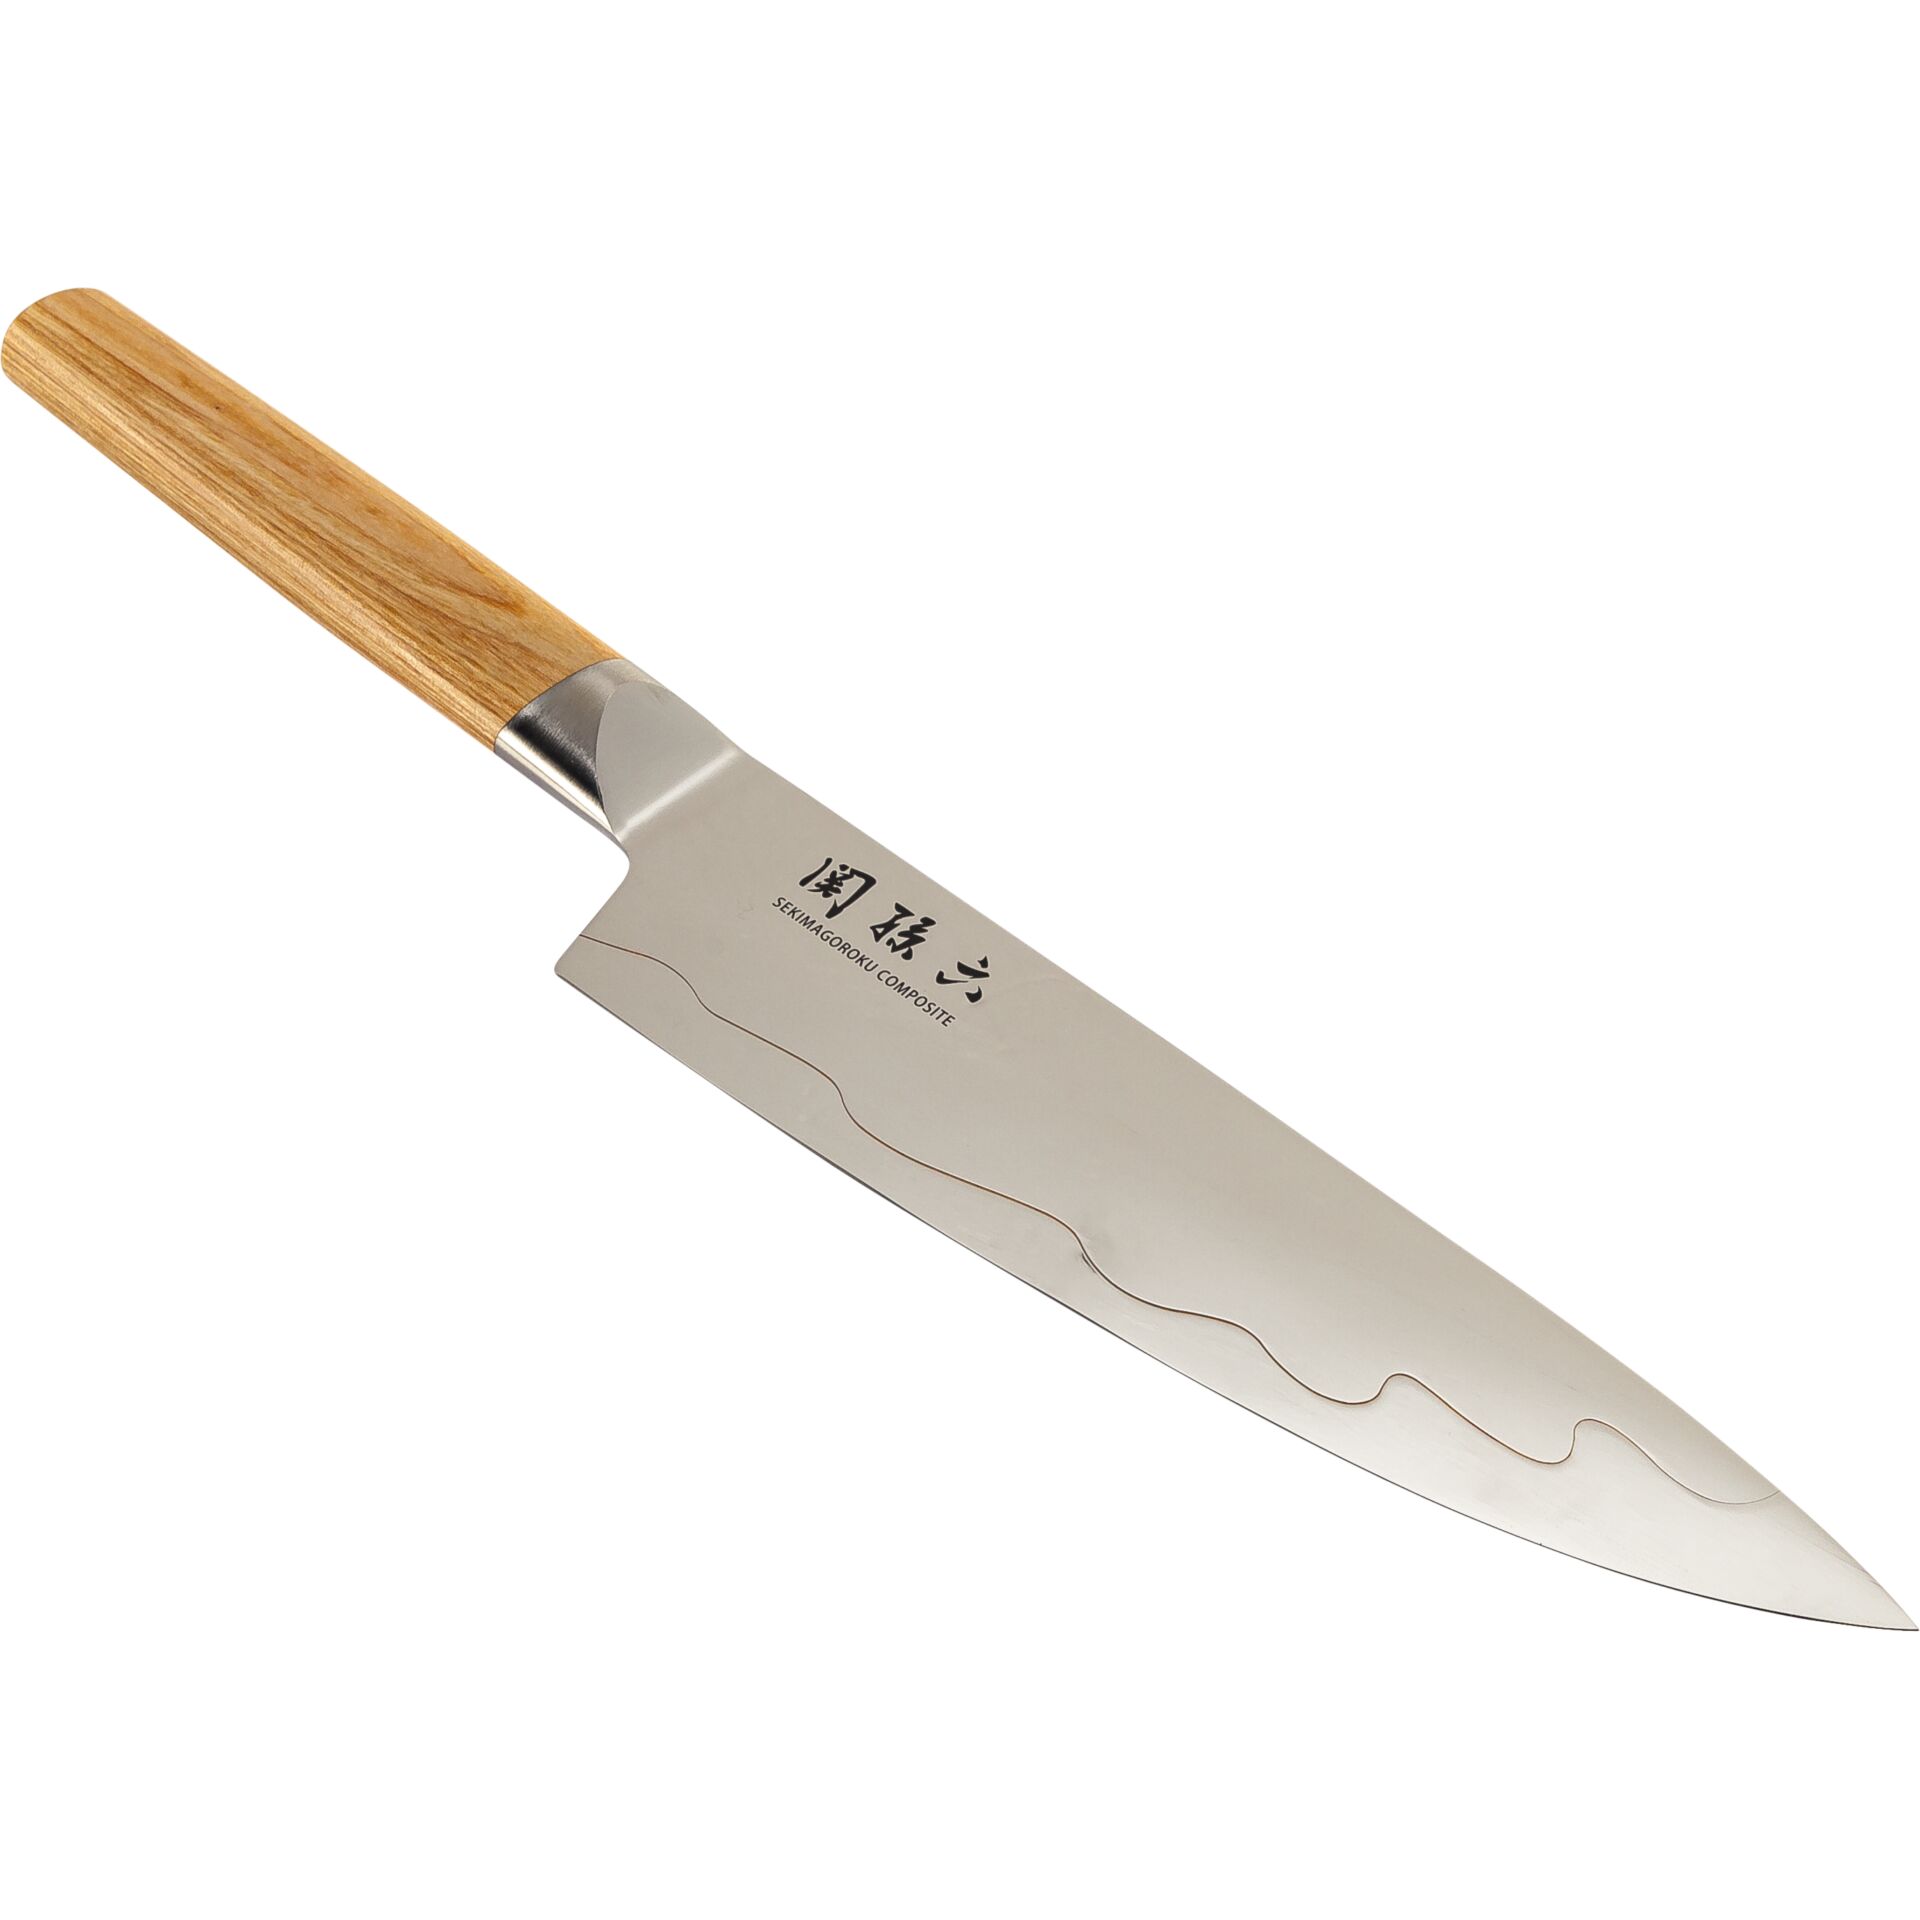 KAI Seki Magoroku Composite Chef's Knife 20 cm